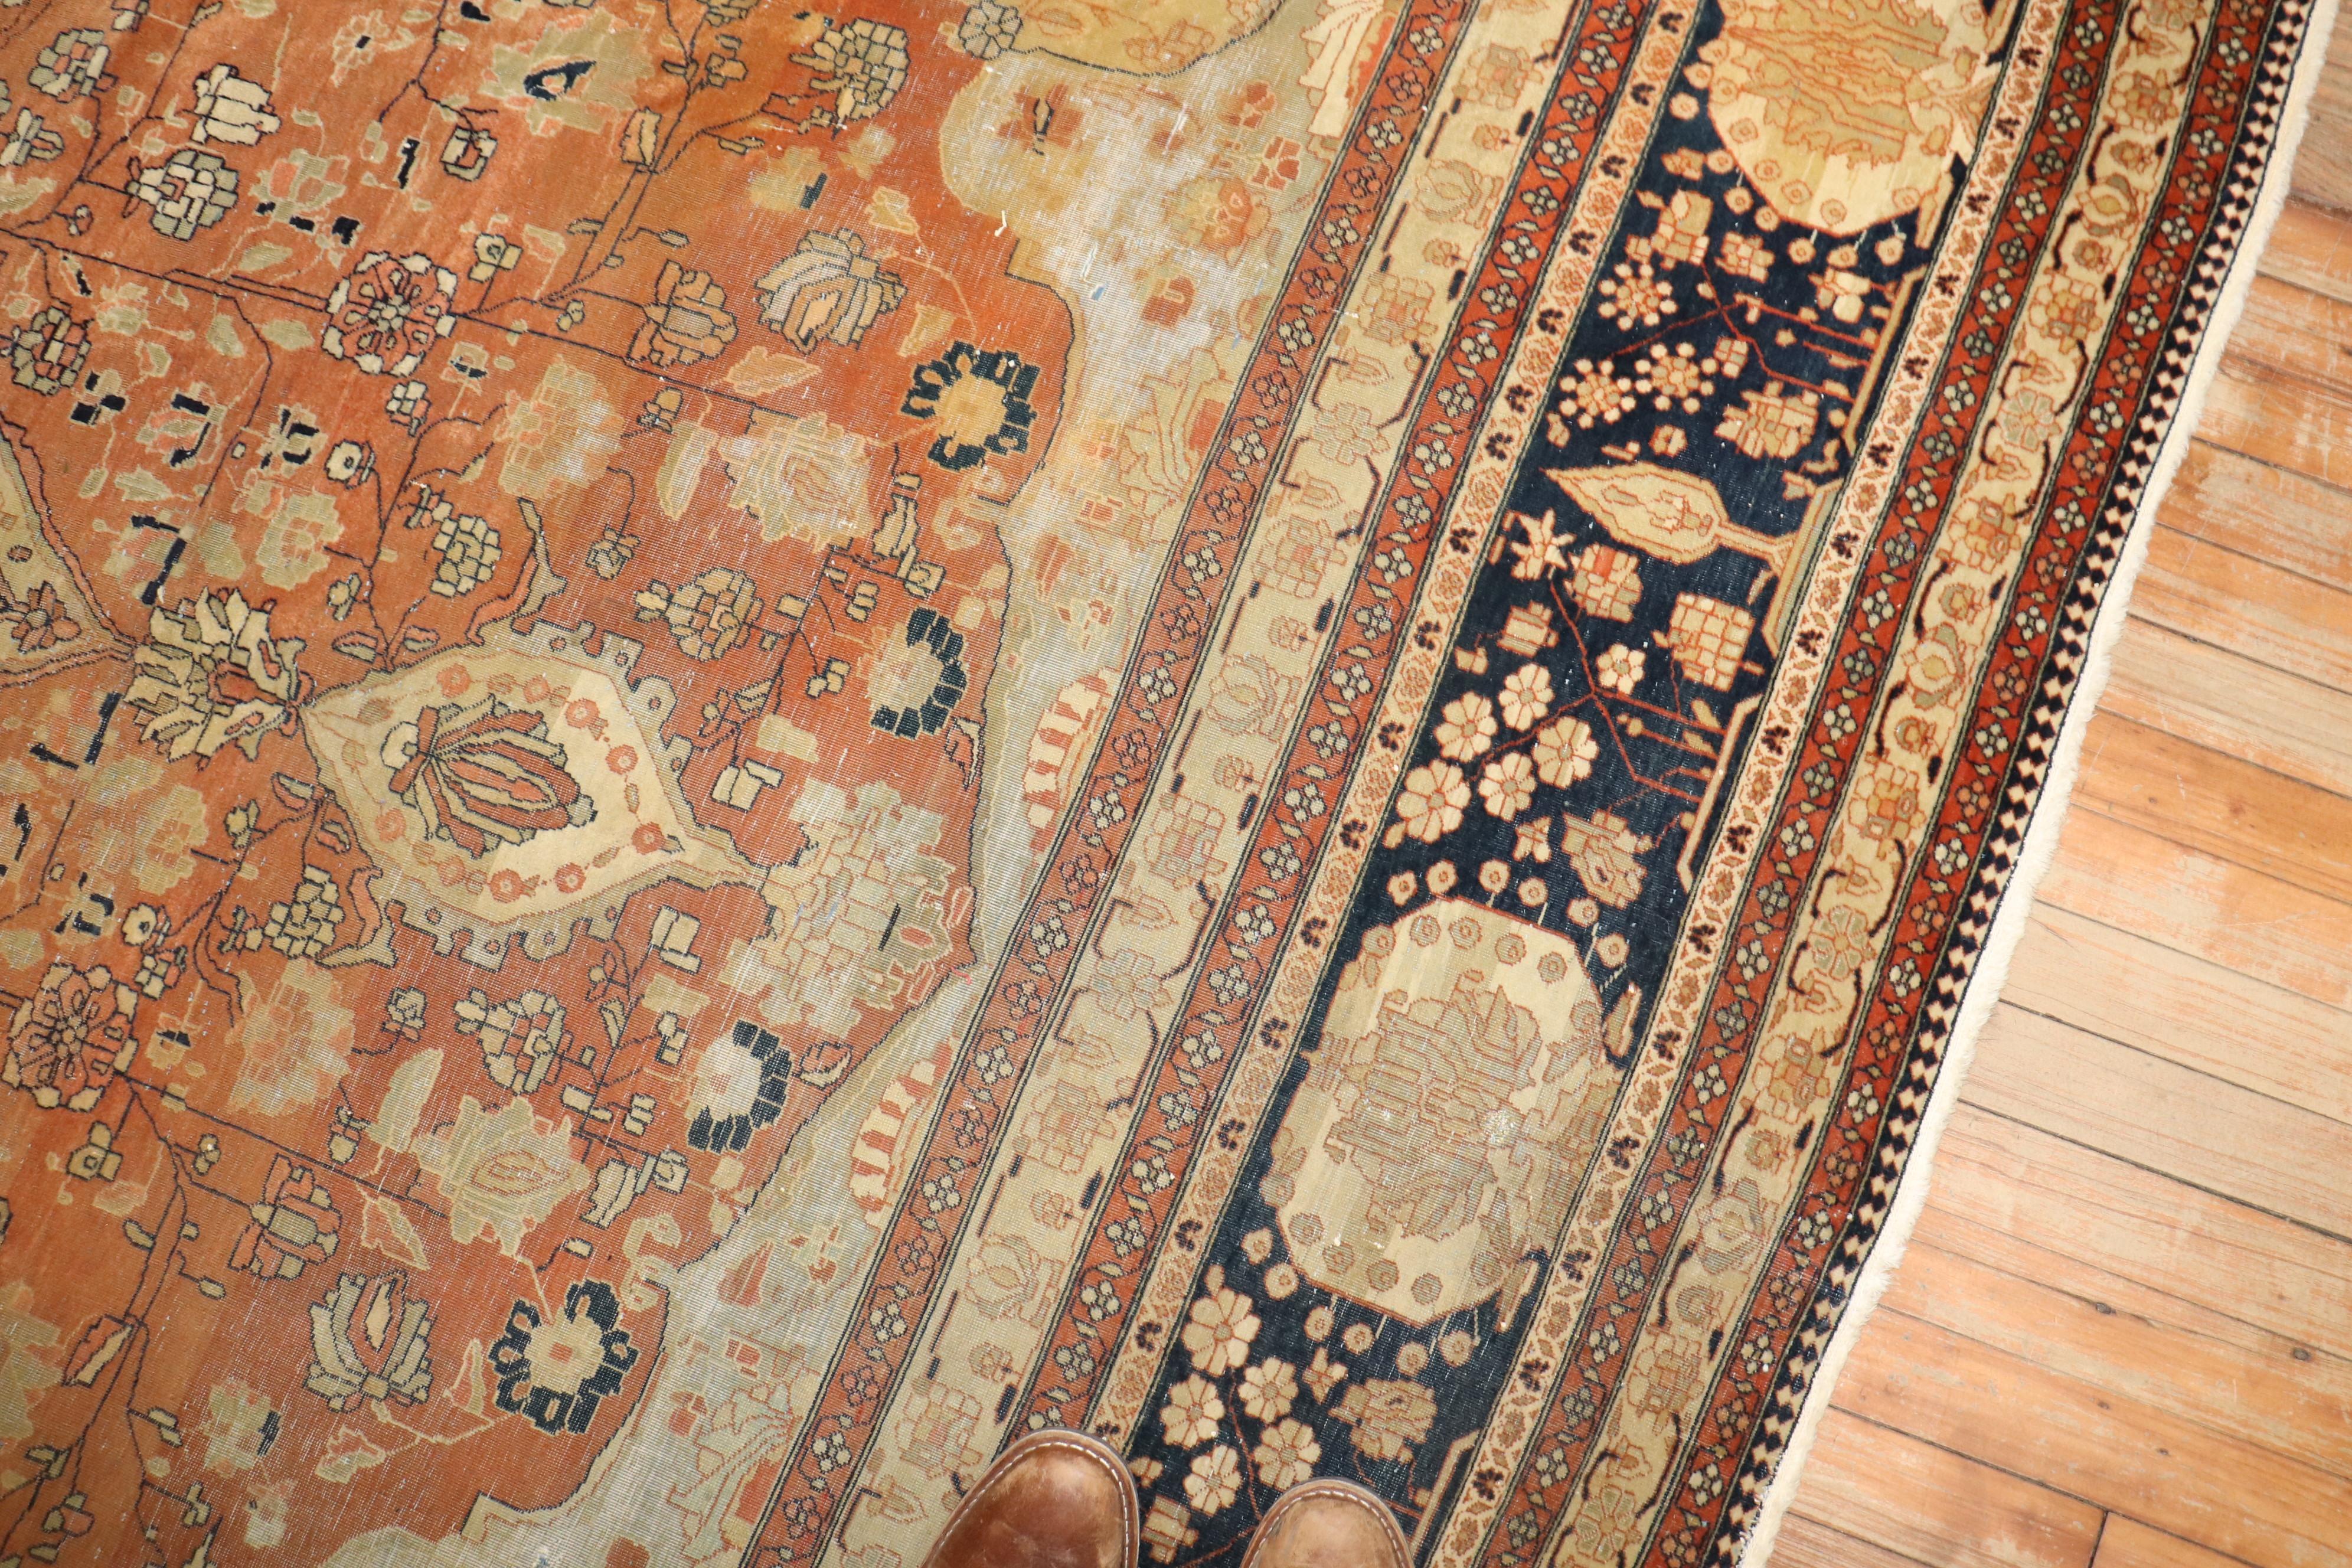 Fin du 19e siècle  Tapis Mohtasham Kashan

8'7'' x 12'

Le groupe le plus rare de tapis de Kashan qui utilise des designs et des palettes de couleurs non traditionnels est le 